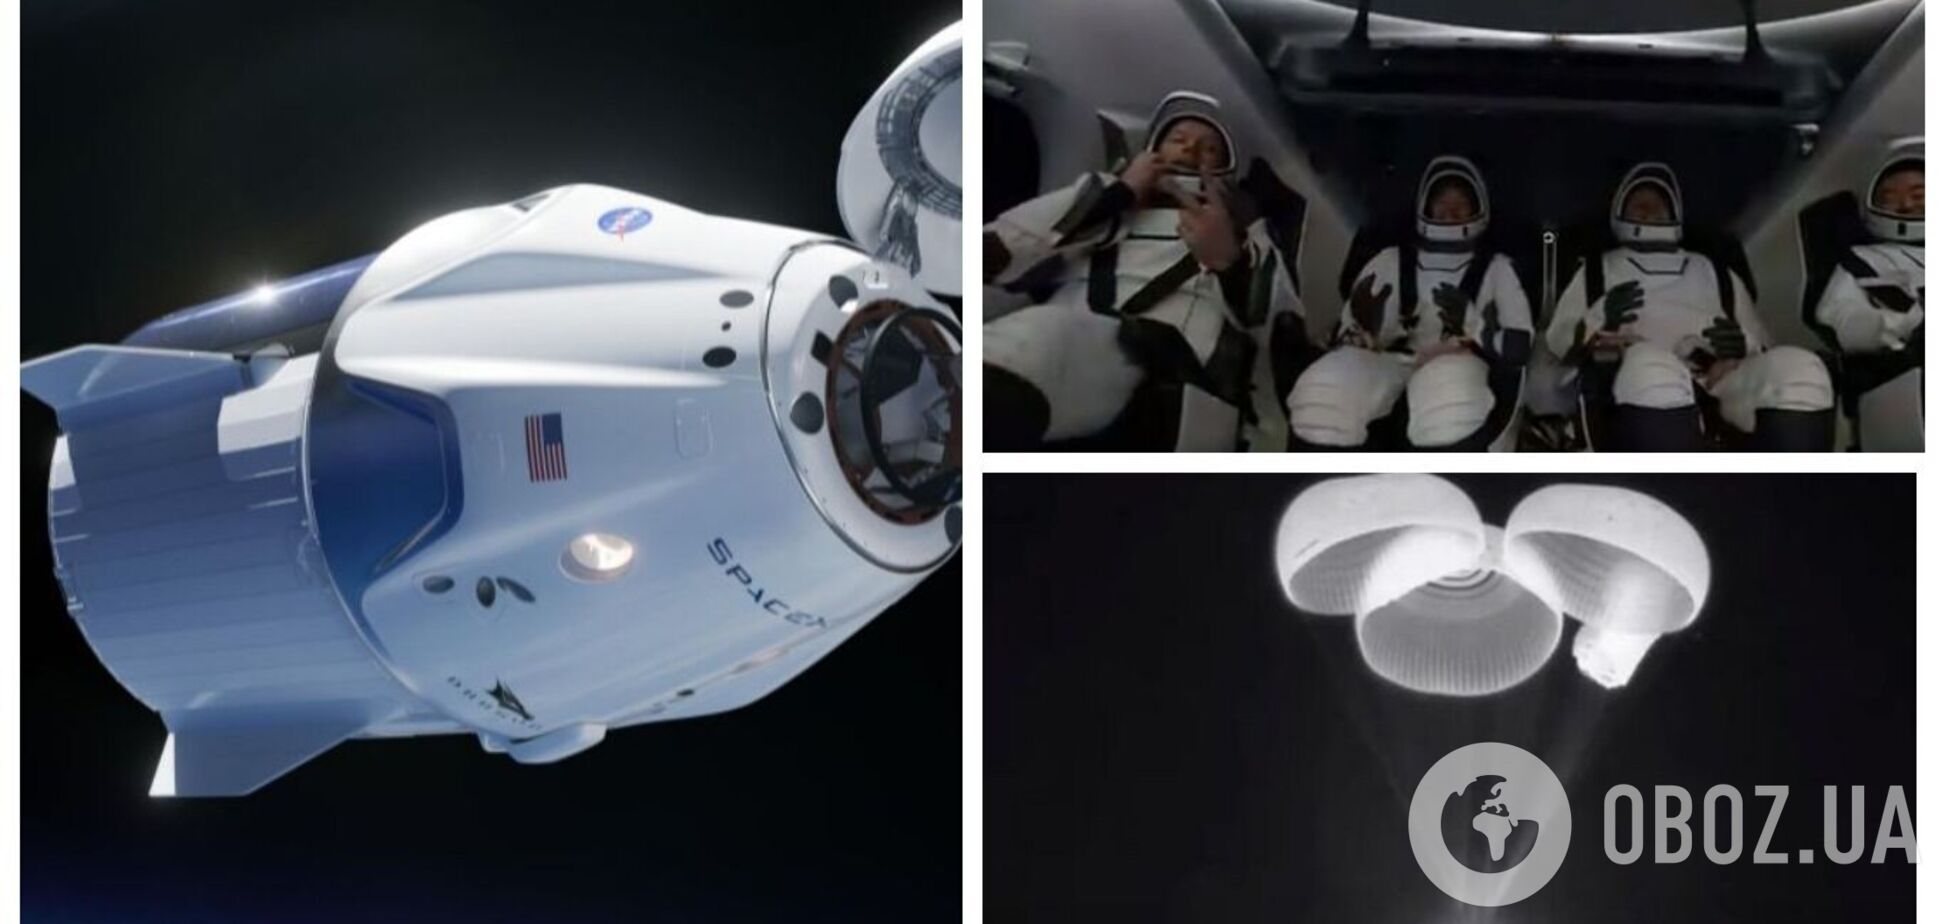 Астронавти SpaceX, які провели пів року в космосі, повернулися на Землю. Відео